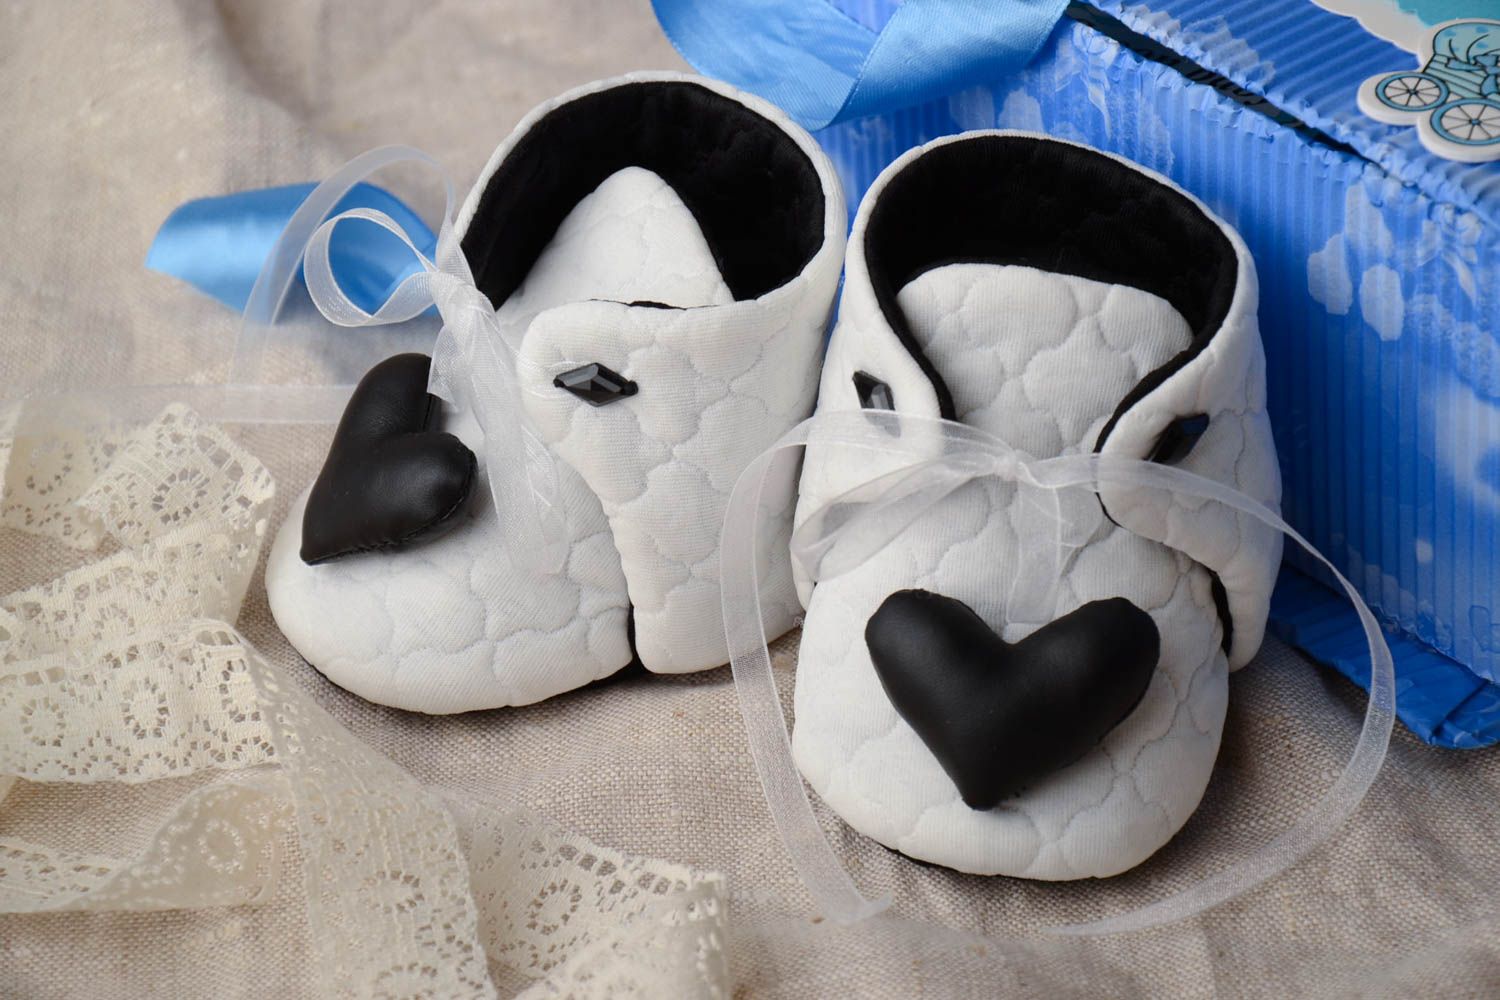 Детская обувь в виде ботиночек из трикотаж бело-черных с сердечками хэнд мэйд фото 1